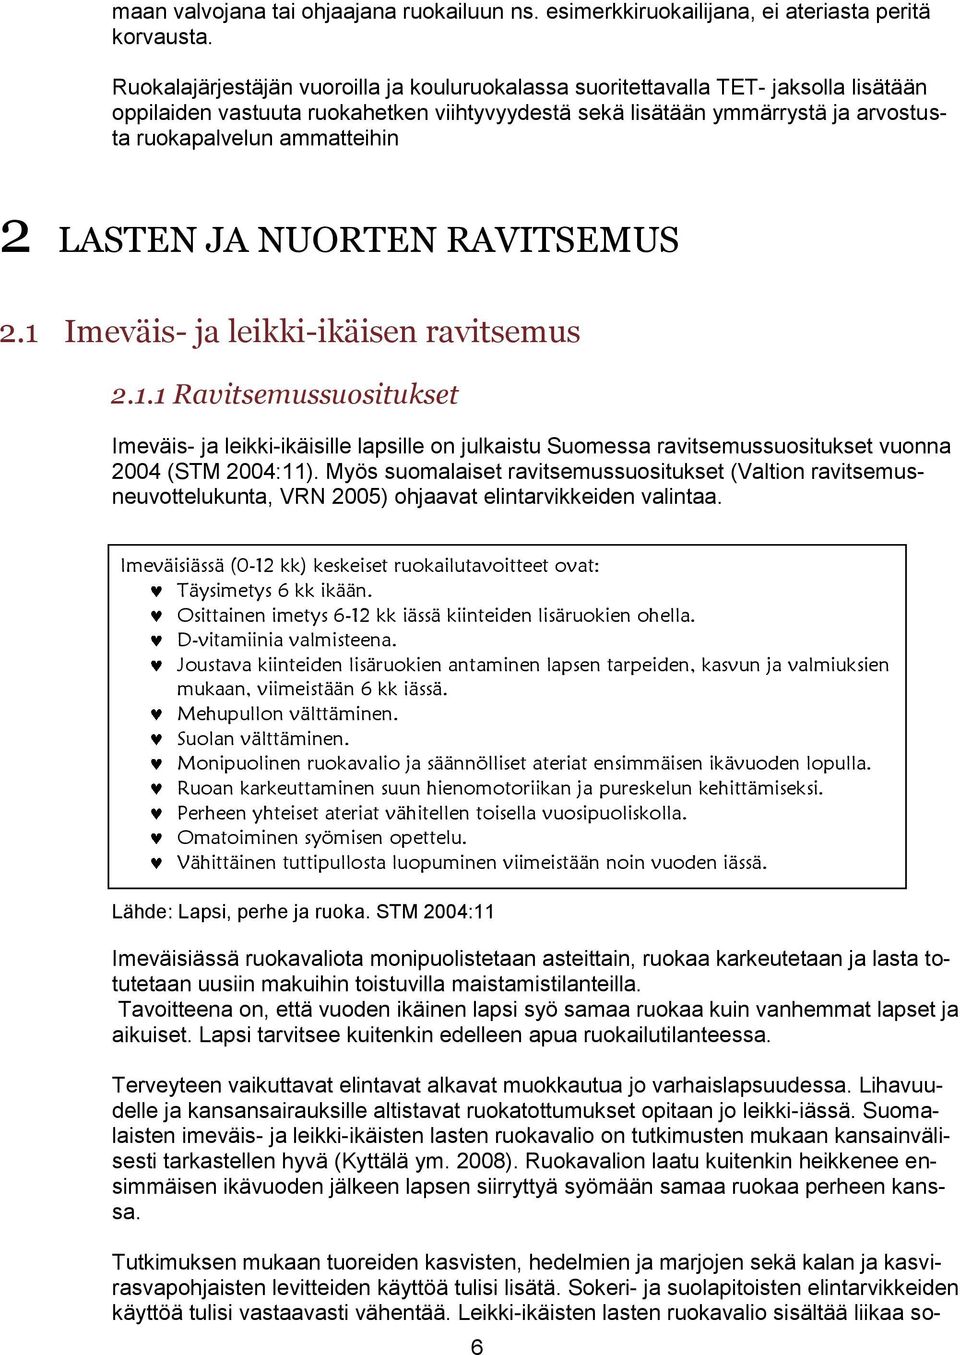 2 LASTEN JA NUORTEN RAVITSEMUS 2.1 Imeväis- ja leikki-ikäisen ravitsemus 2.1.1 Ravitsemussuositukset Imeväis- ja leikki-ikäisille lapsille on julkaistu Suomessa ravitsemussuositukset vuonna 2004 (STM 2004:11).